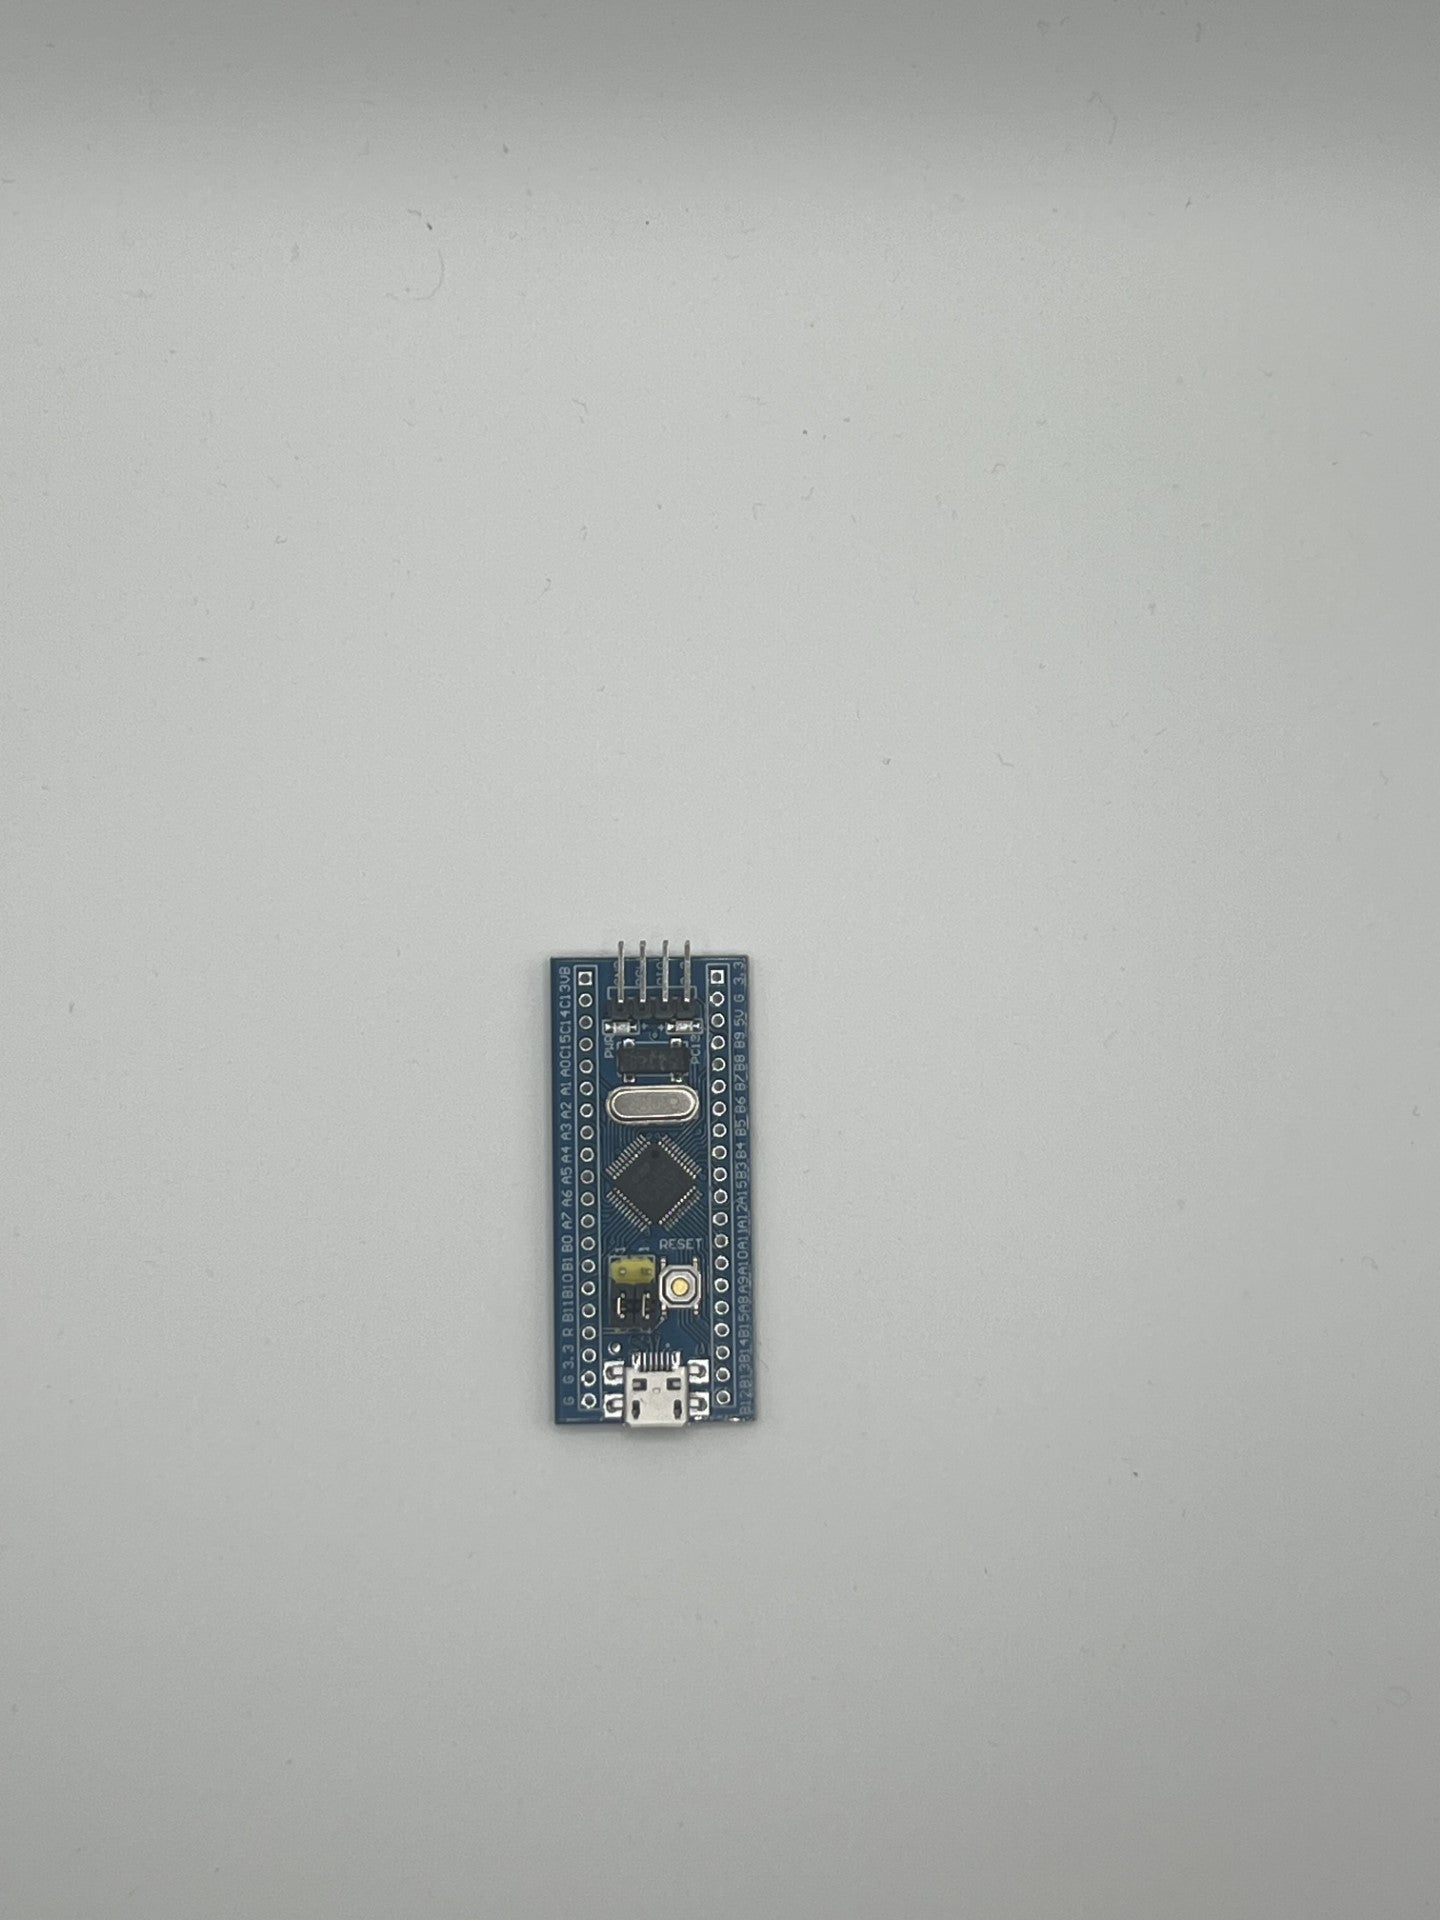 STM32 Bluepill Minimum Micro USB System Development Board.